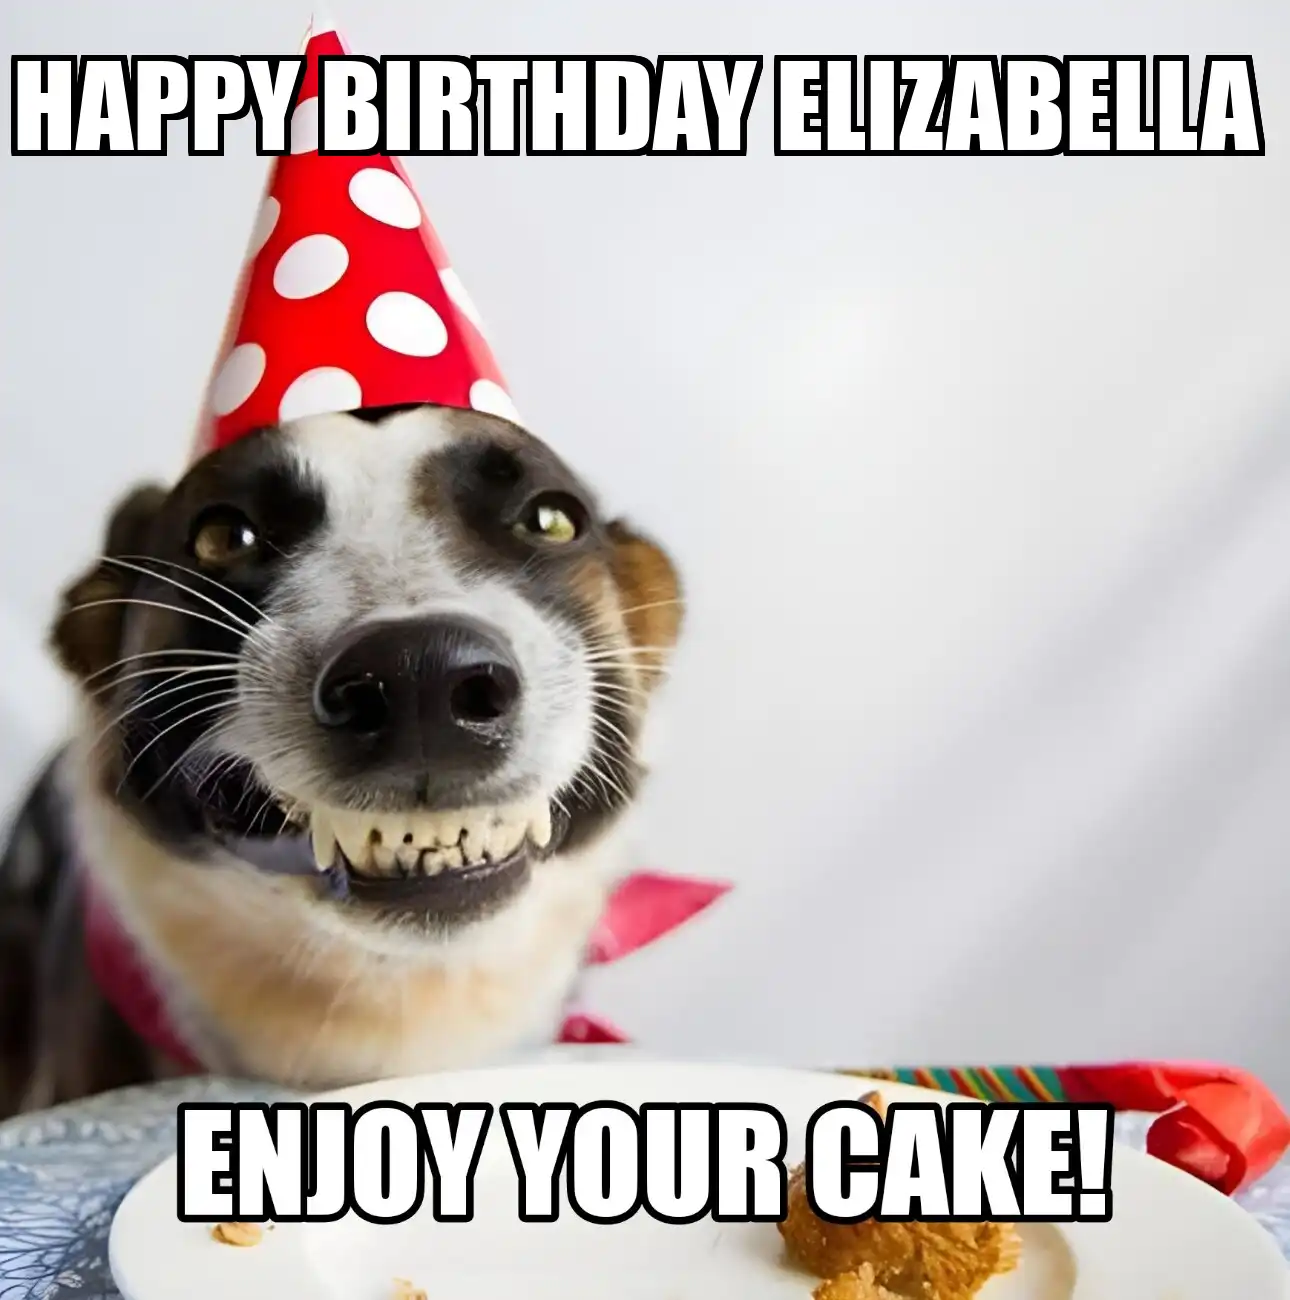 Happy Birthday Elizabella Enjoy Your Cake Dog Meme